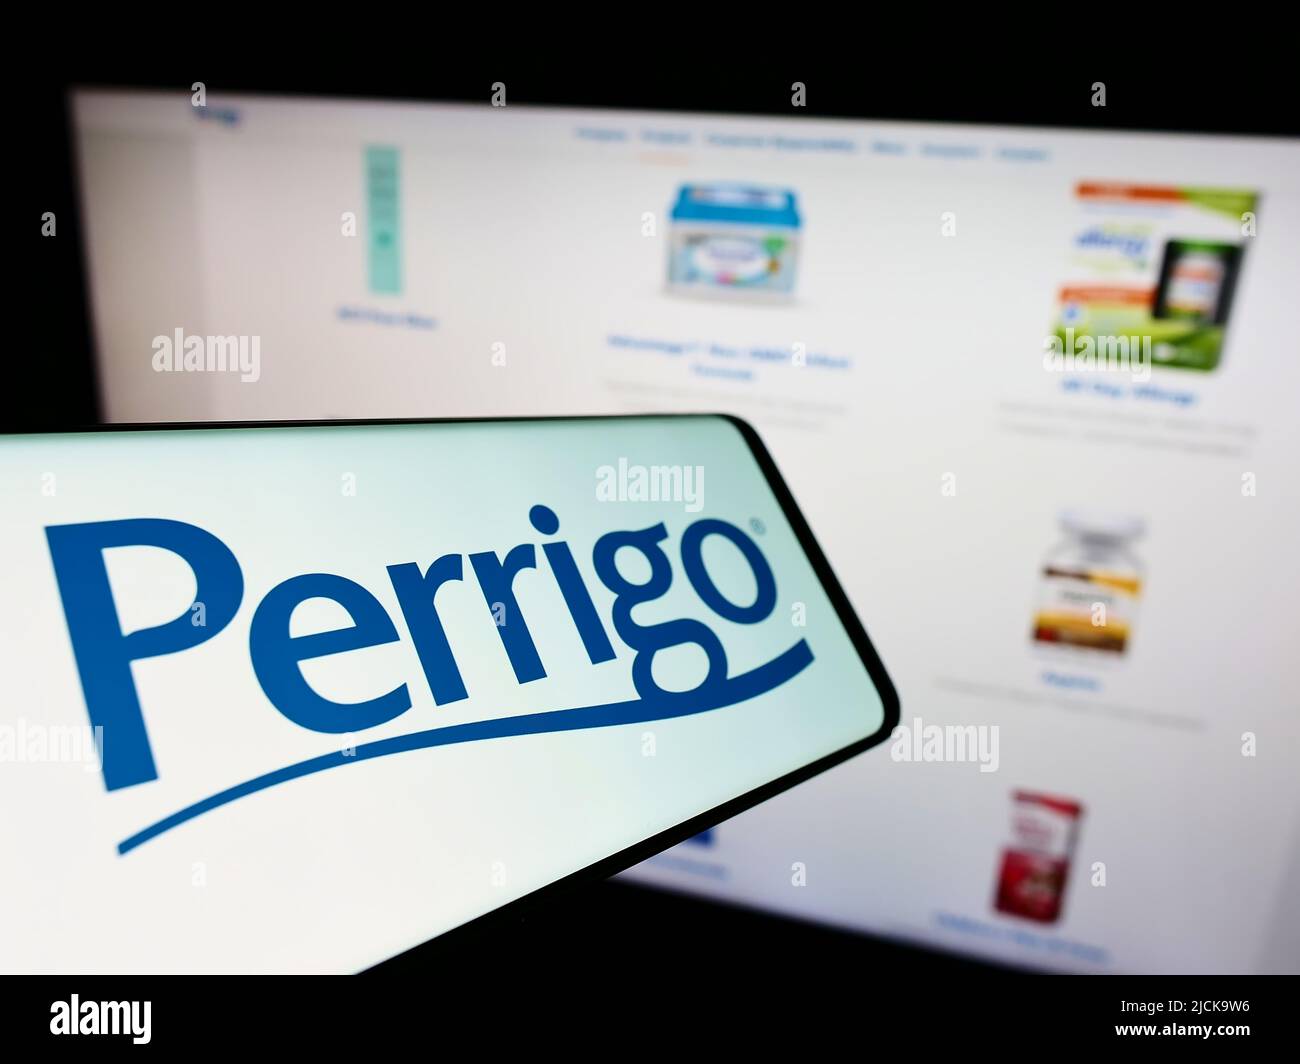 Telefono cellulare con logo del produttore farmaceutico Perrigo Company plc sullo schermo di fronte al sito web. Concentrarsi sul centro del display del telefono. Foto Stock